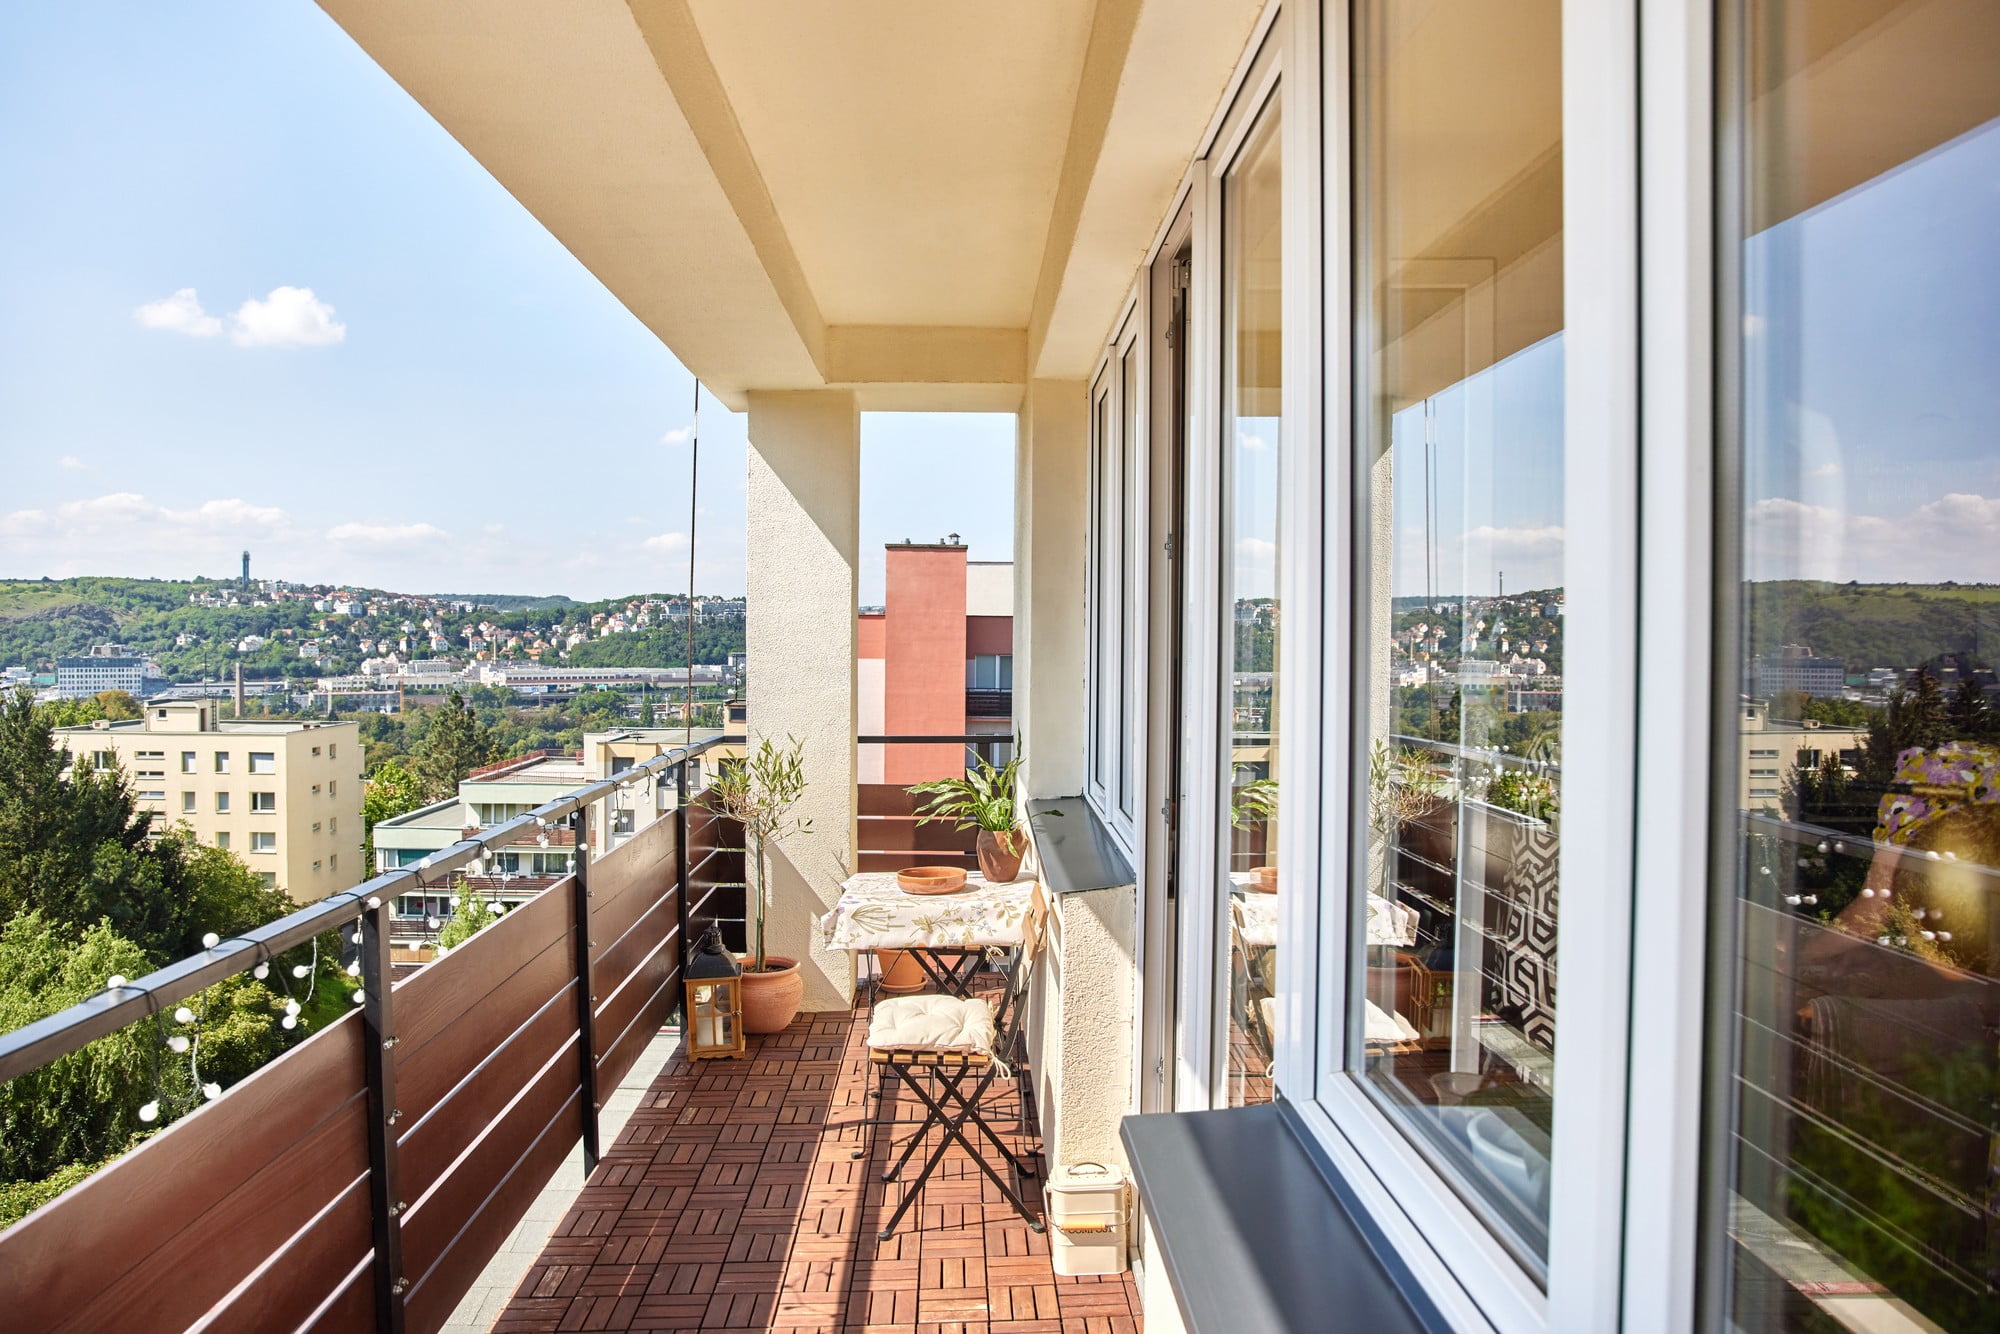 Balkon može biti produžetak kuhinje i dnevnog boravka, pogotovo ljeti.